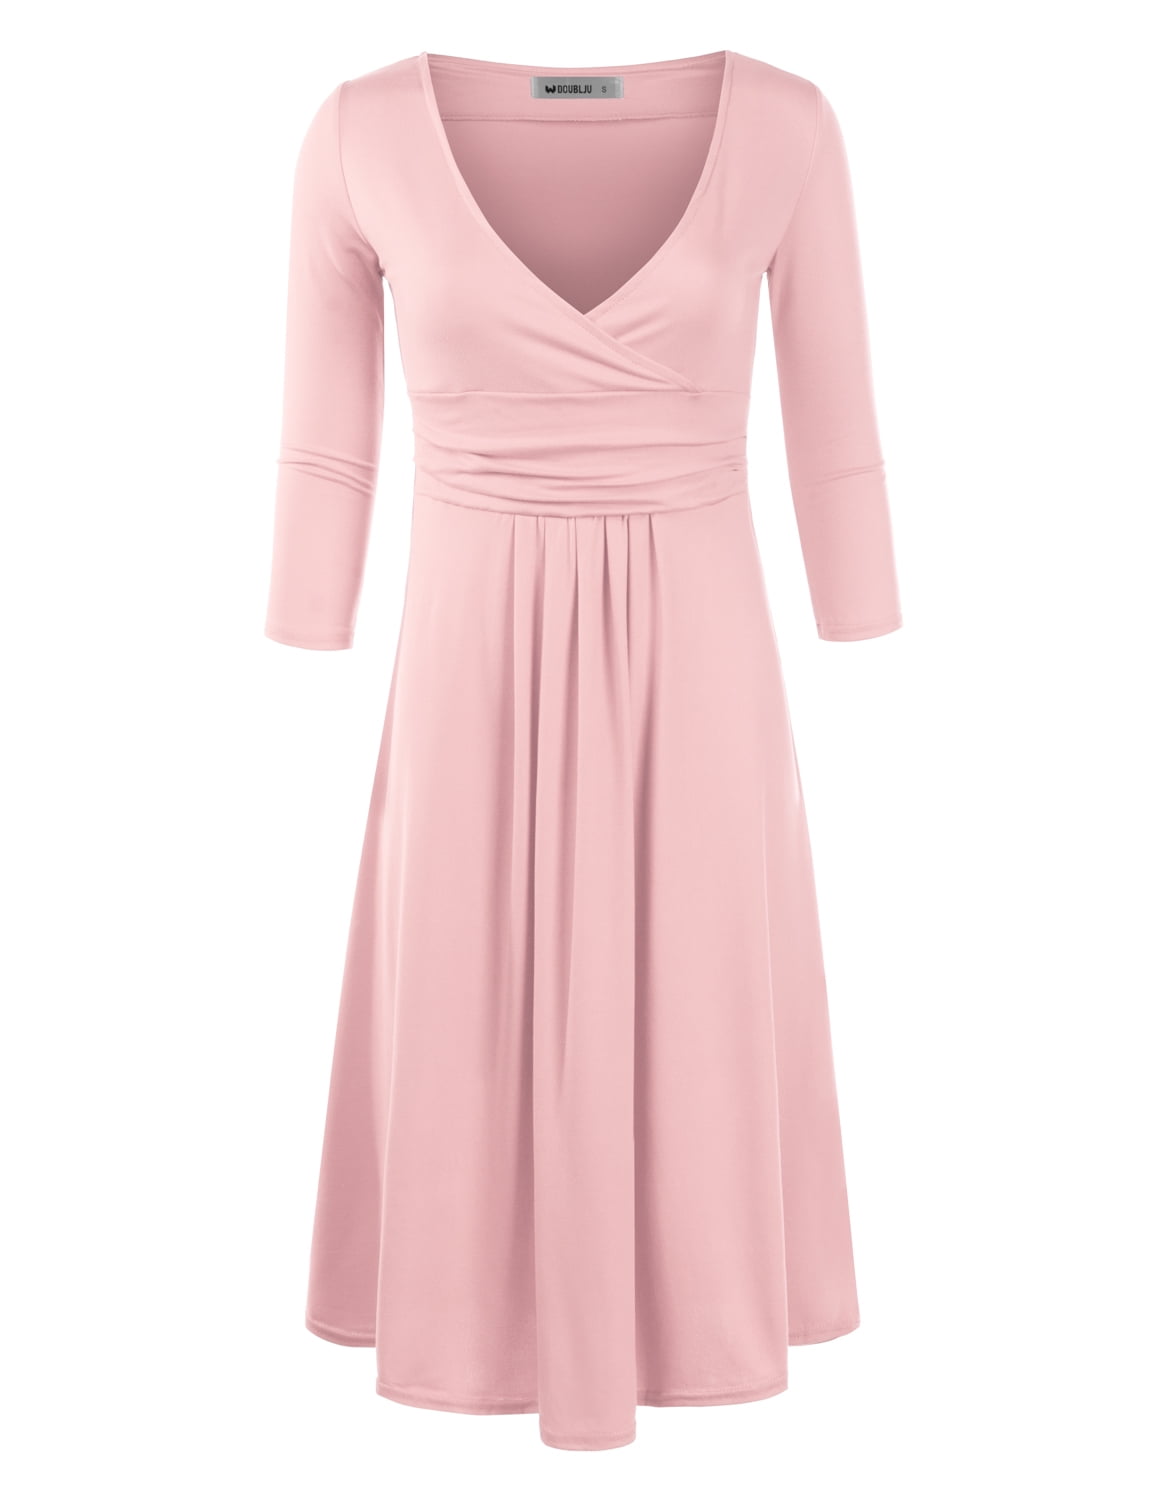 womens light pink dress